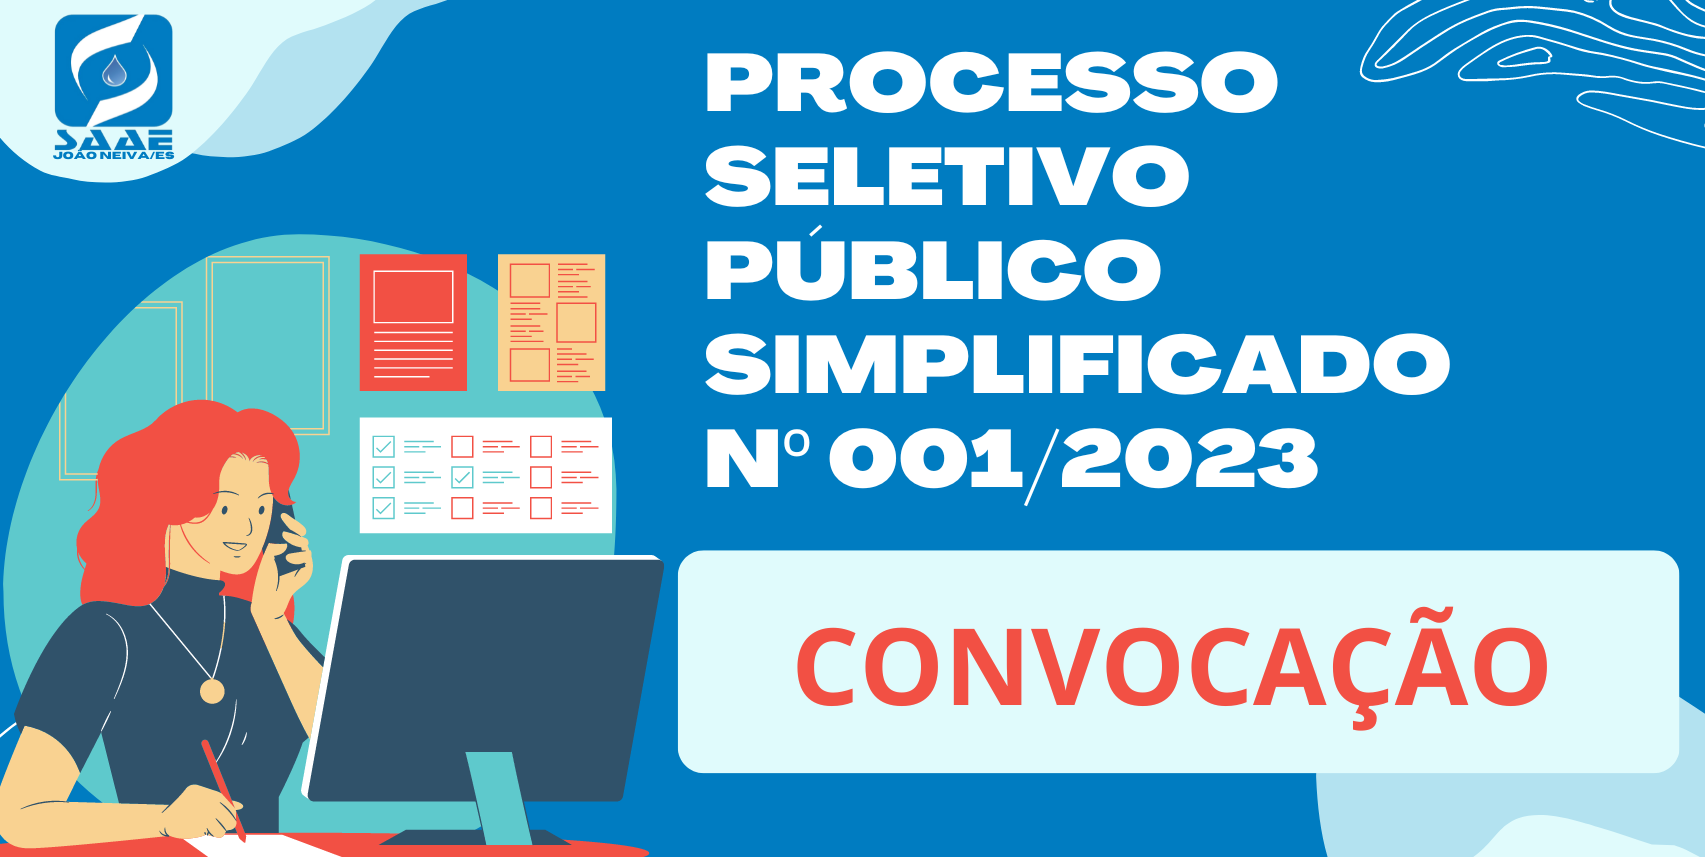 EDITAL DE CONVOCAÇÃO Nº 009/2023 - PROCESSO SELETIVO PÚBLICO SIMPLIFICADO Nº 001/2023